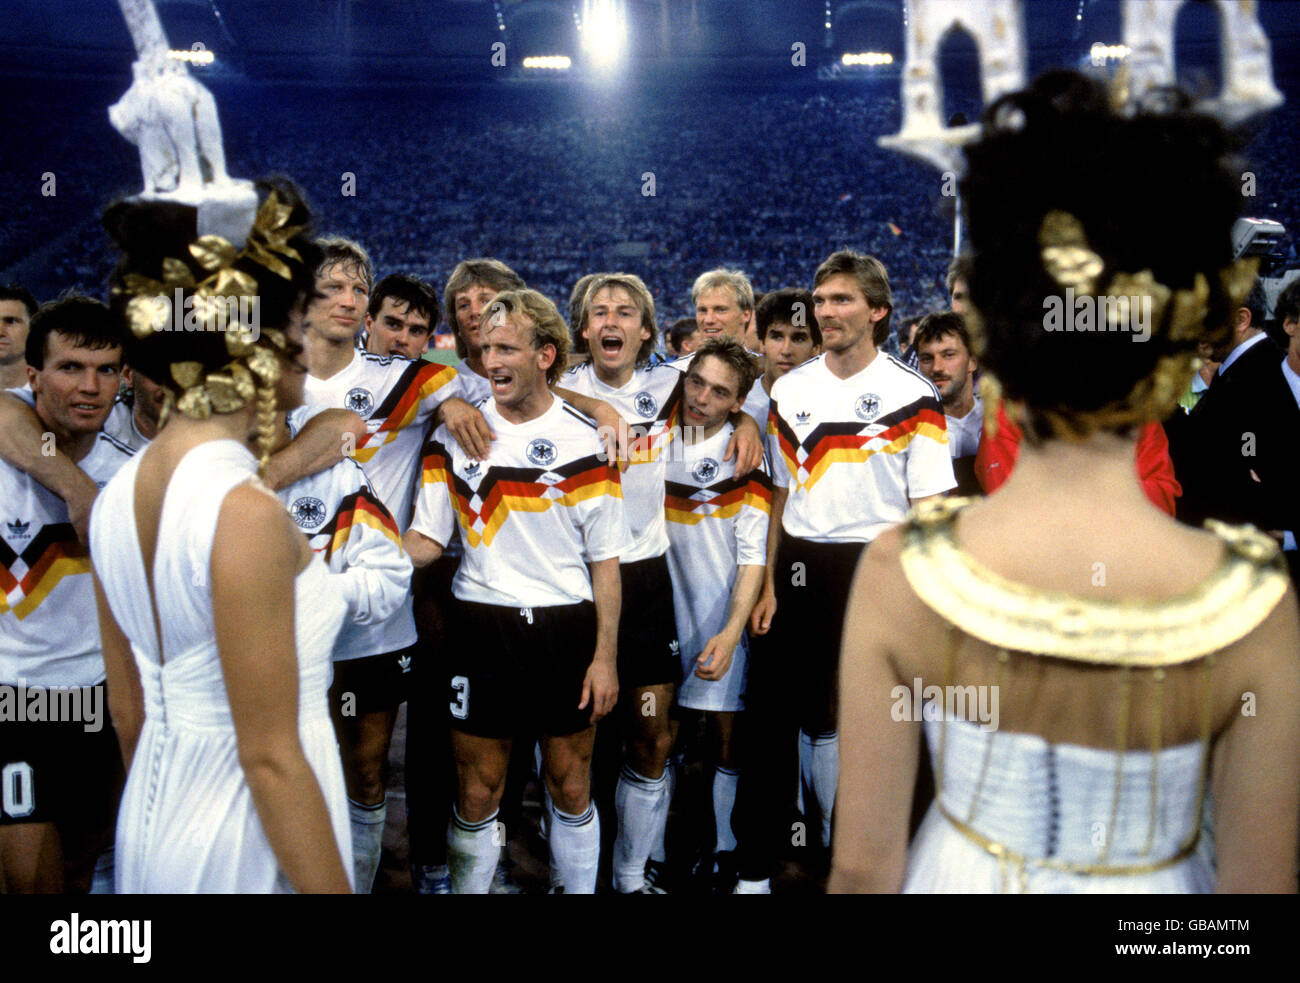 Calcio - Coppa del mondo Italia 90 - finale - Germania Ovest contro Argentina. La squadra trionfante della Germania occidentale aspetta di essere presentata con le loro medaglie vincitori Foto Stock